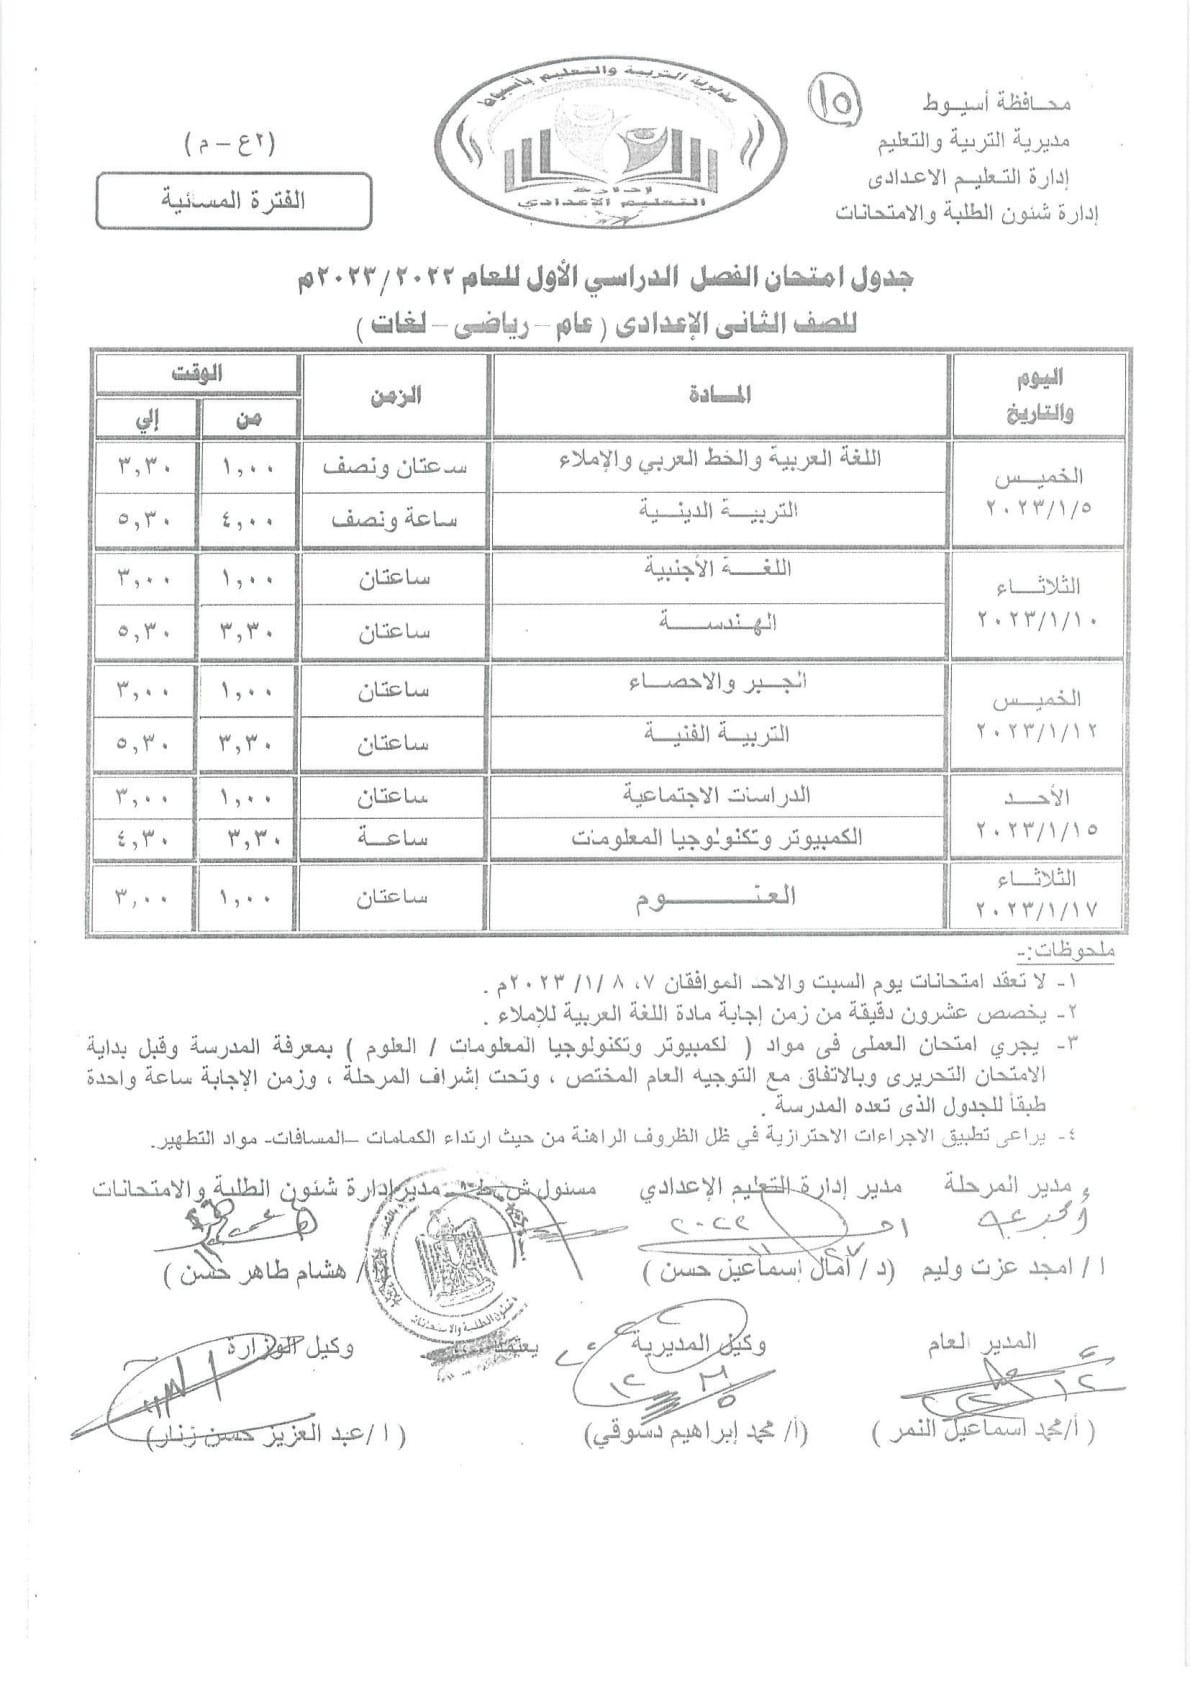 امتحانات الفصل الدراسي الأول تتعارض مع أعياد المسيحيين وأولياء أمور مصر يطالب الوزير بالتدخل